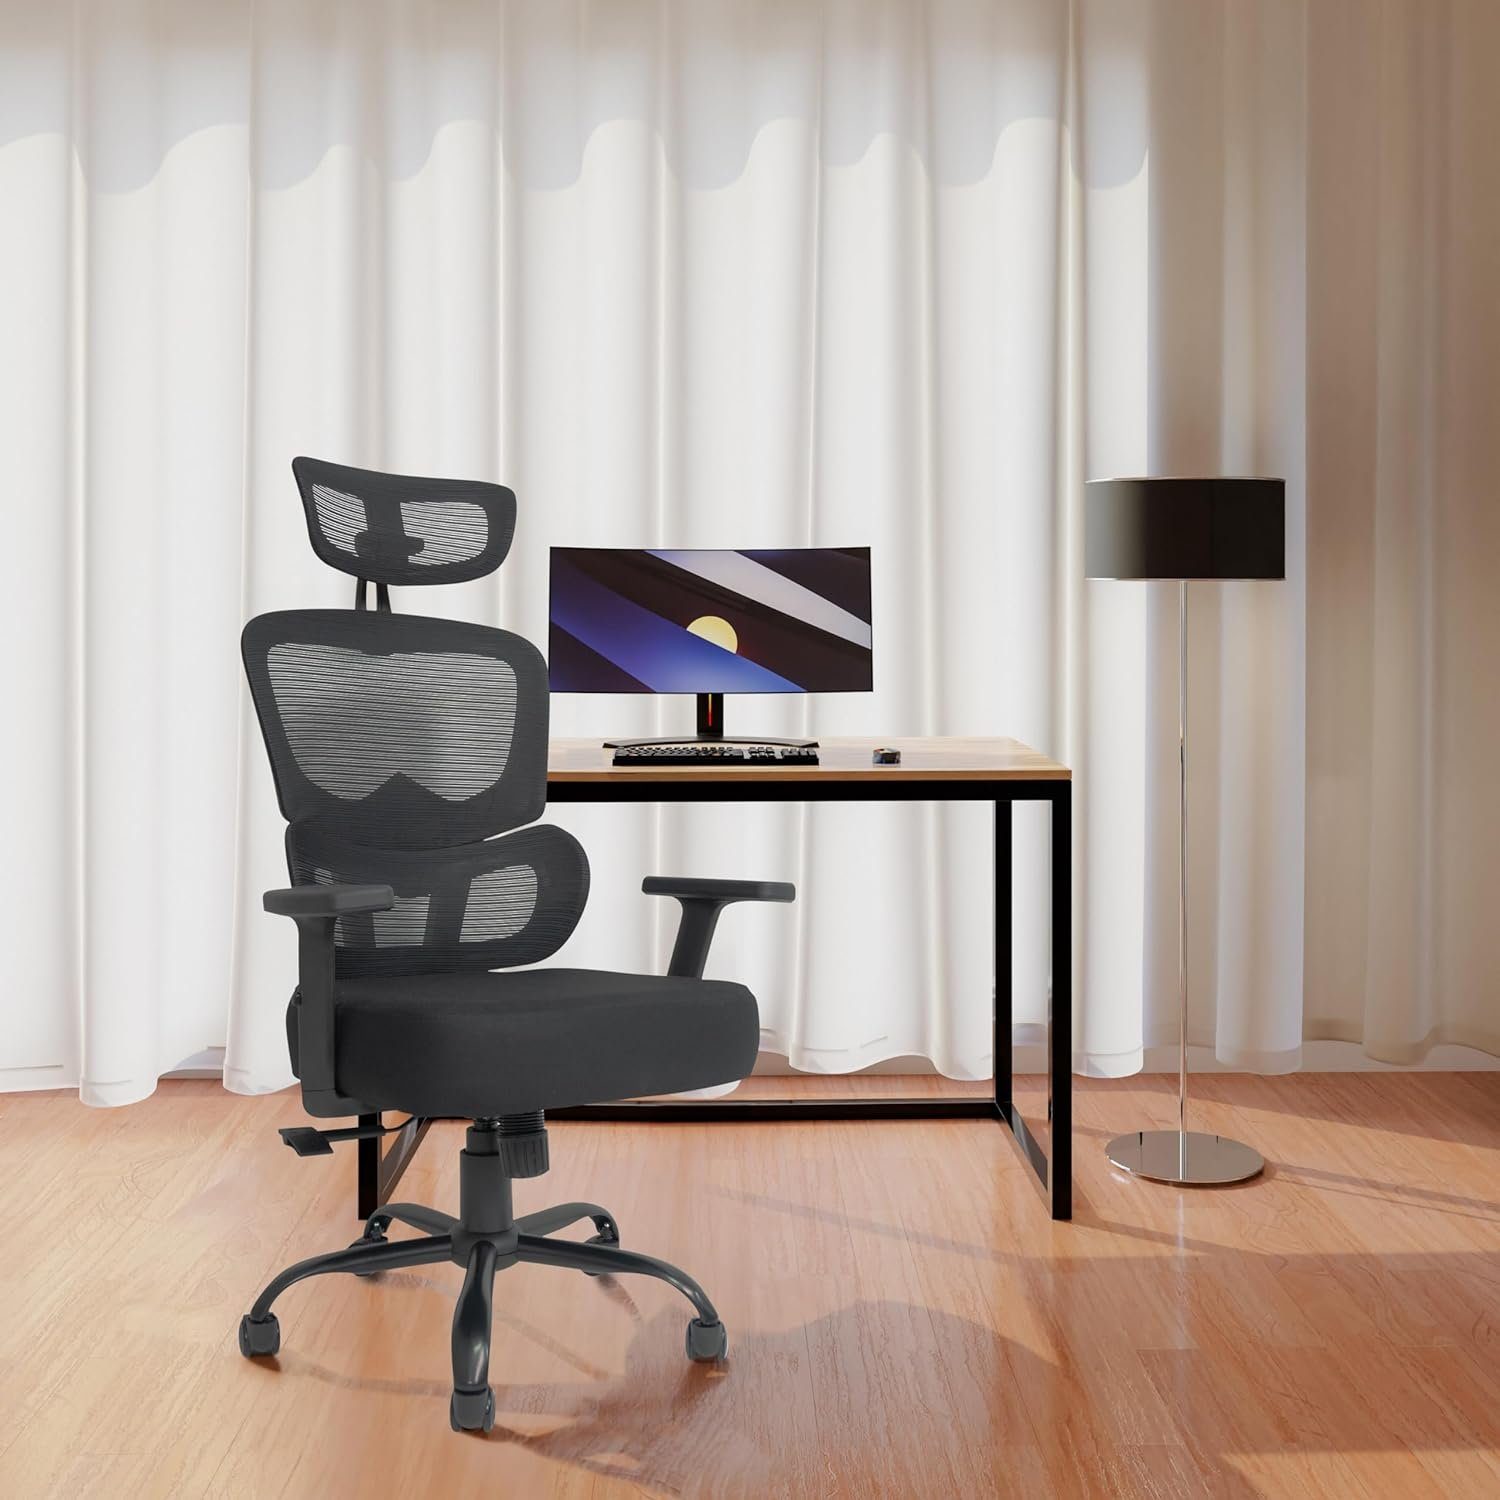 TITANO Bürostuhl (Bürostuhl ergonomisch: Sitz), Bürostuhl verstellbarem Schreibtischstuhl Höhe Verstellbarer Schreibtischstuhl mit - mit Ergonomischer